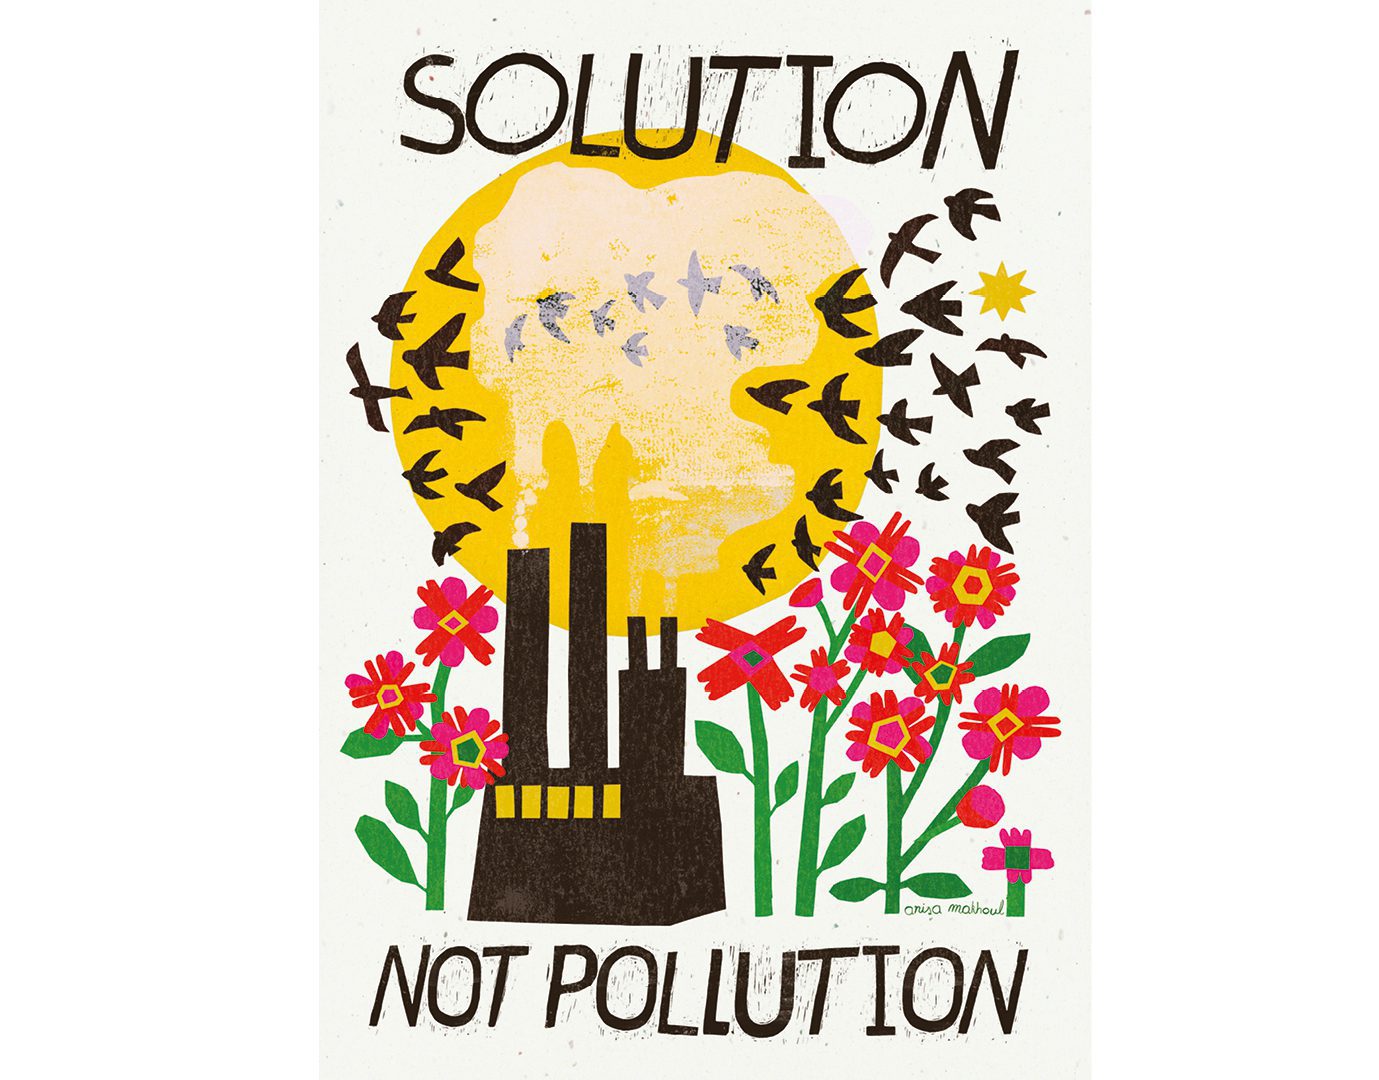 'Solutions, not pollution' (Soluciones, no contaminación)